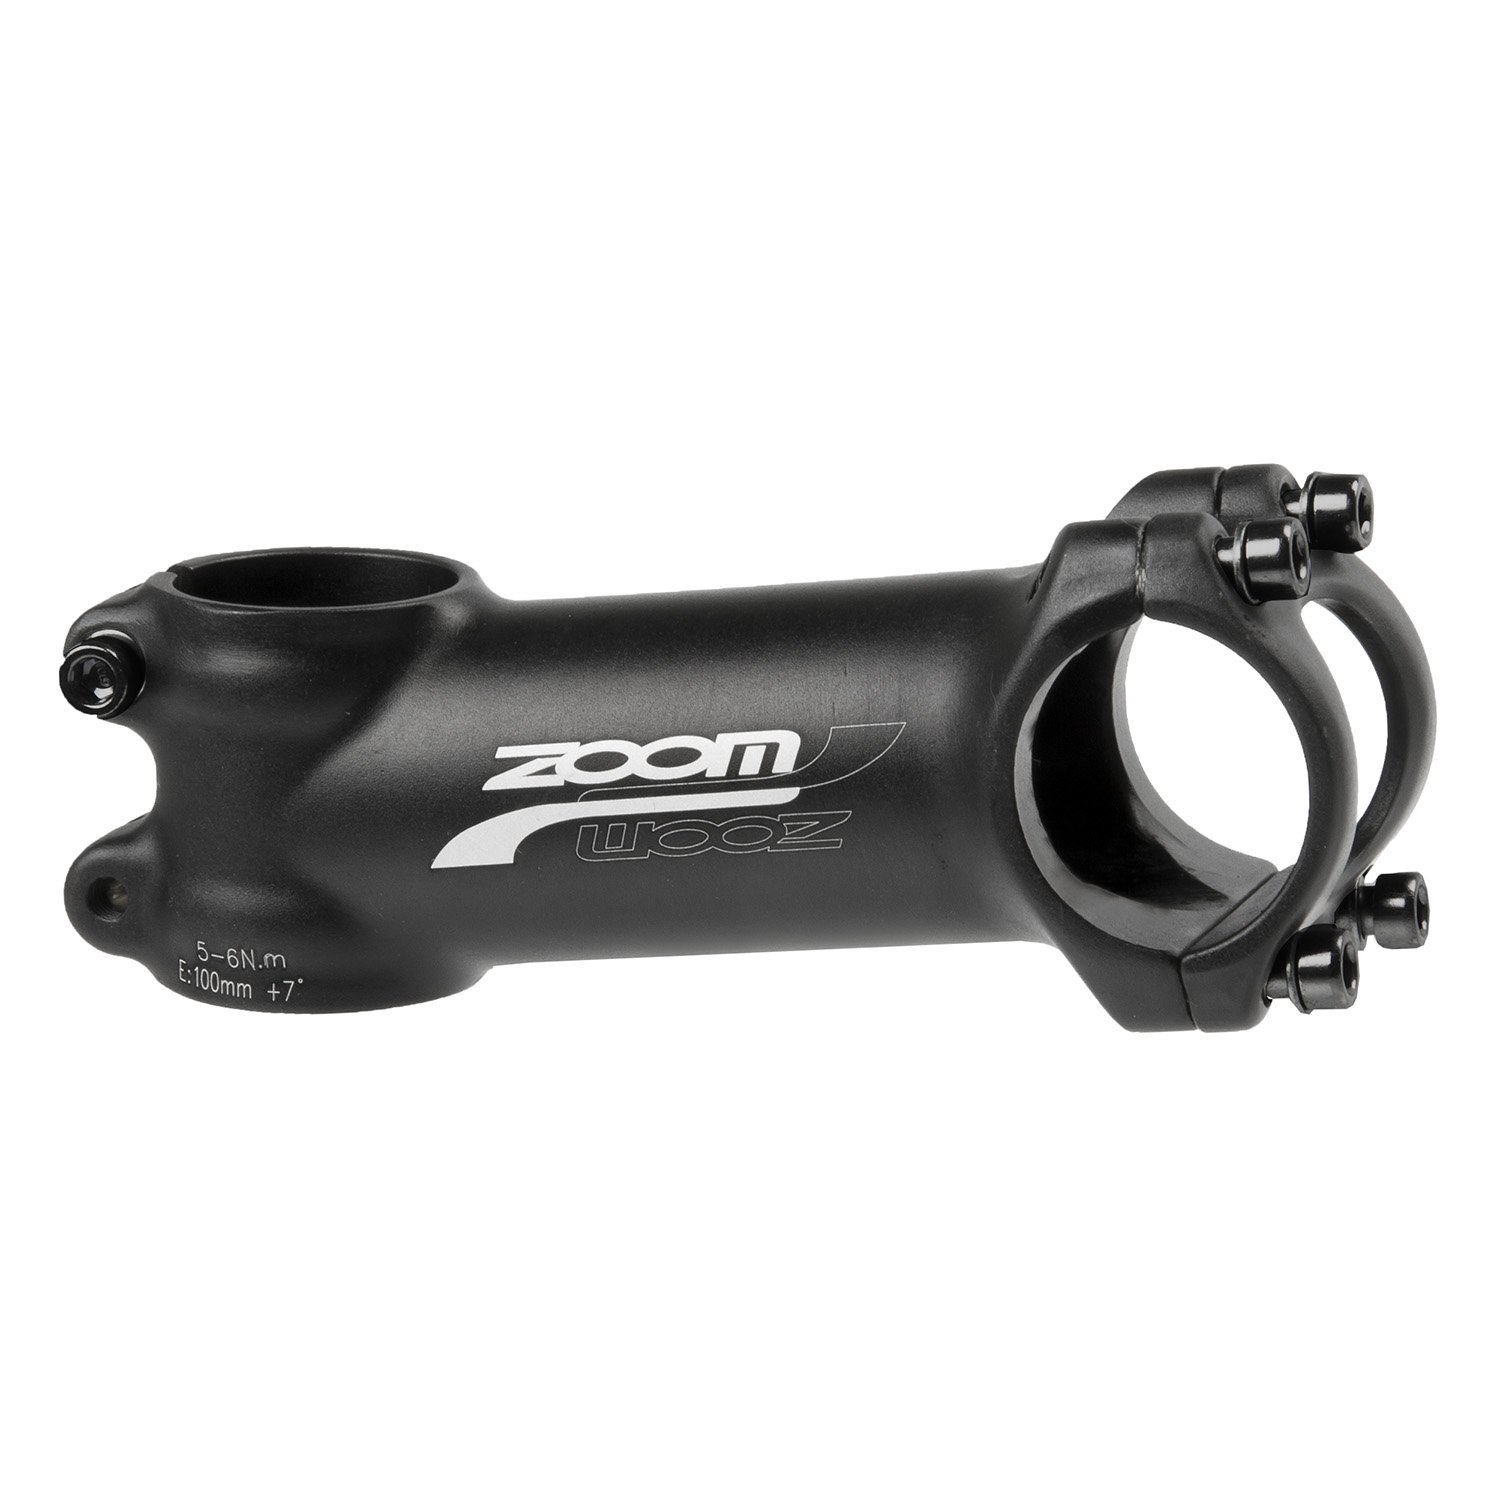  Вынос велосипедный ZOOM, внешний, нерегулируемый, 1 1/8, 100мм/+7`, для руля 31,8мм, алюминий, черный, 5-404506